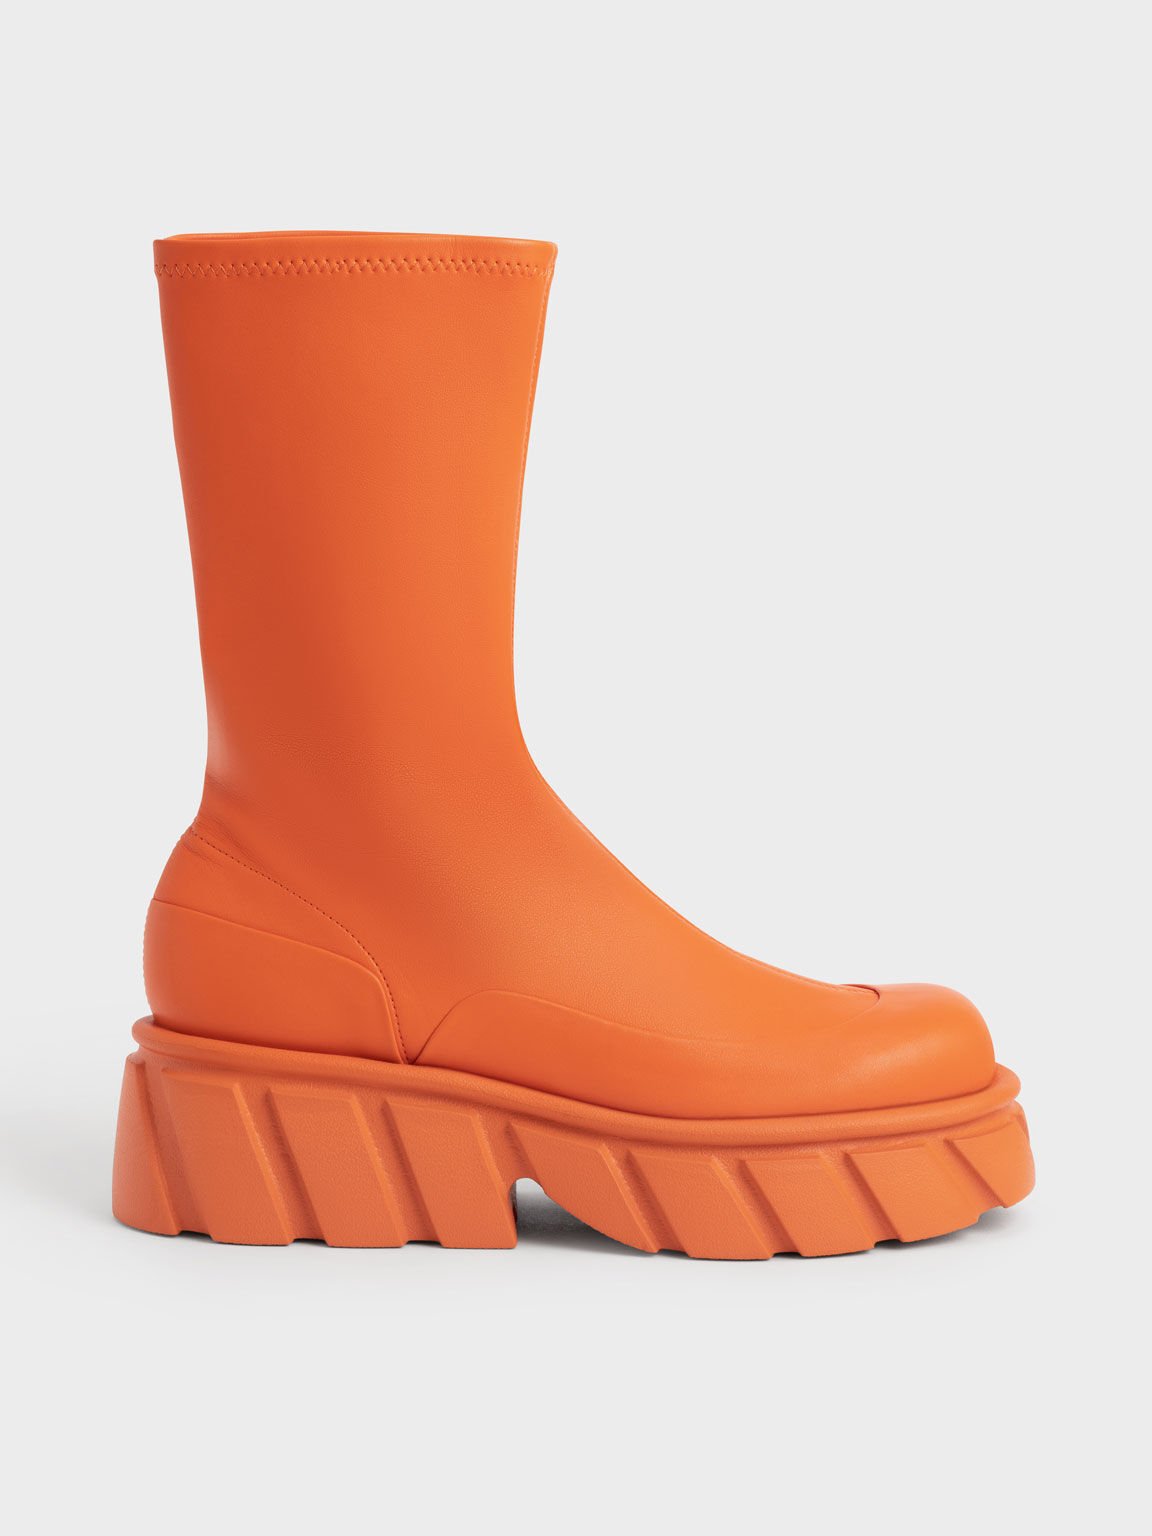 Aberdeen Platform Boots, Orange, hi-res